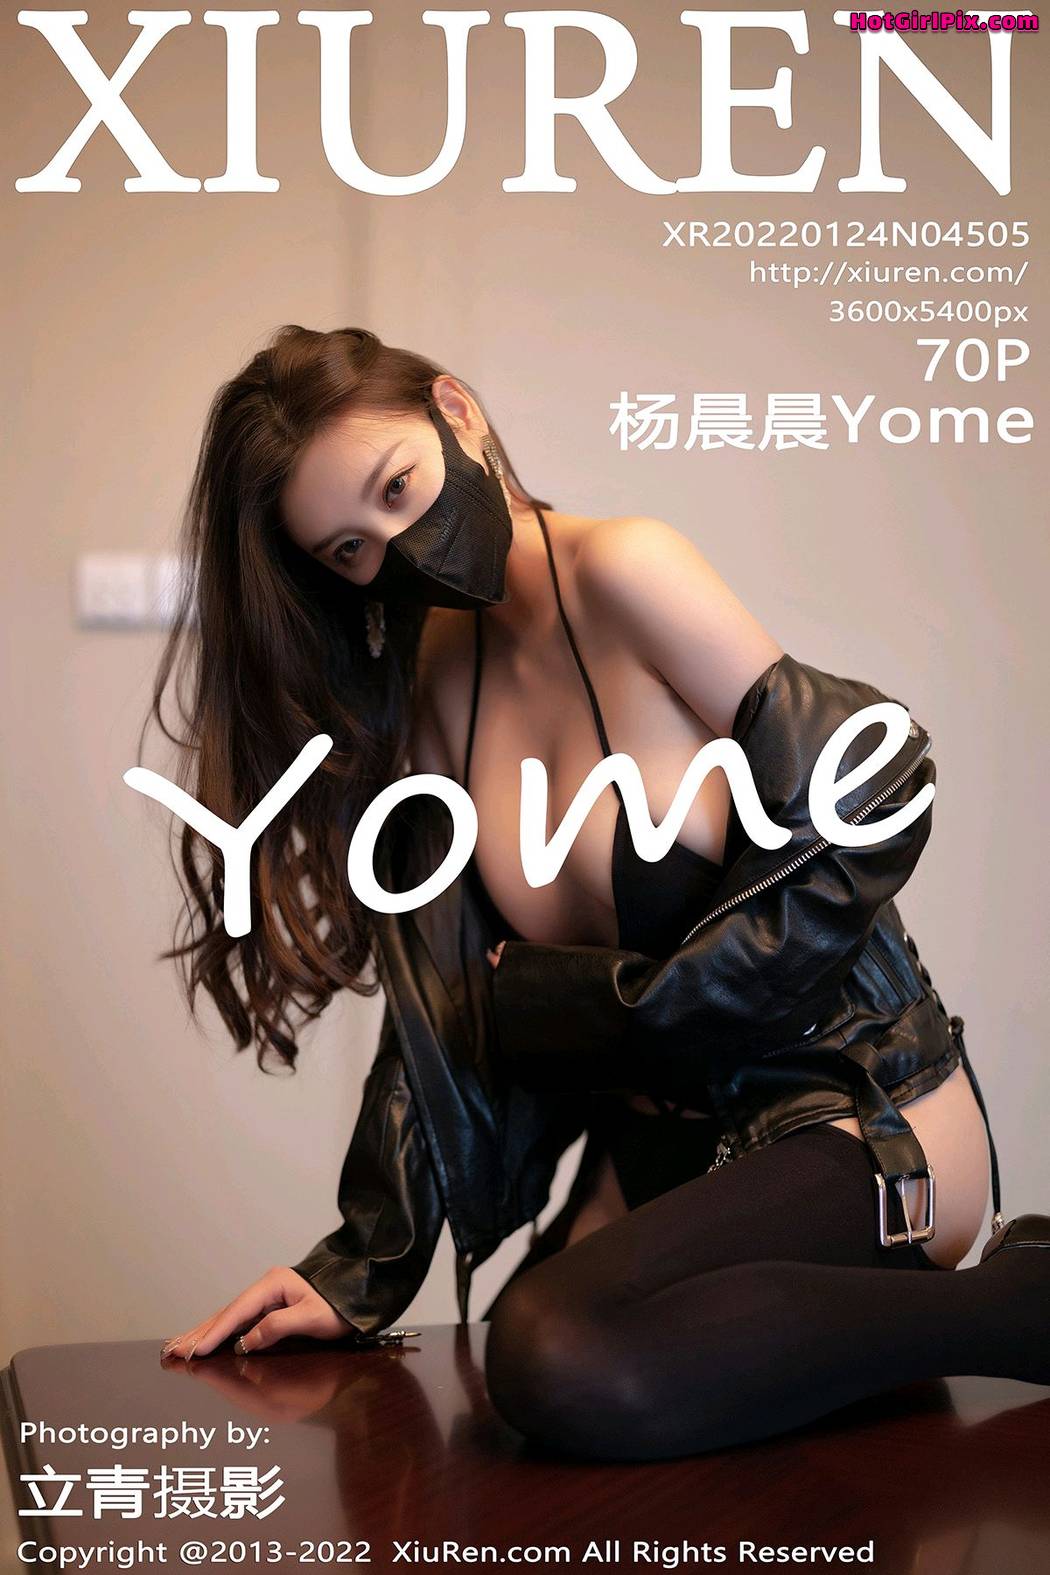 [XIUREN] No.4505 Yang Chen Chen 杨晨晨Yome (Yang Chen Chen 杨晨晨sugar) Cover Photo